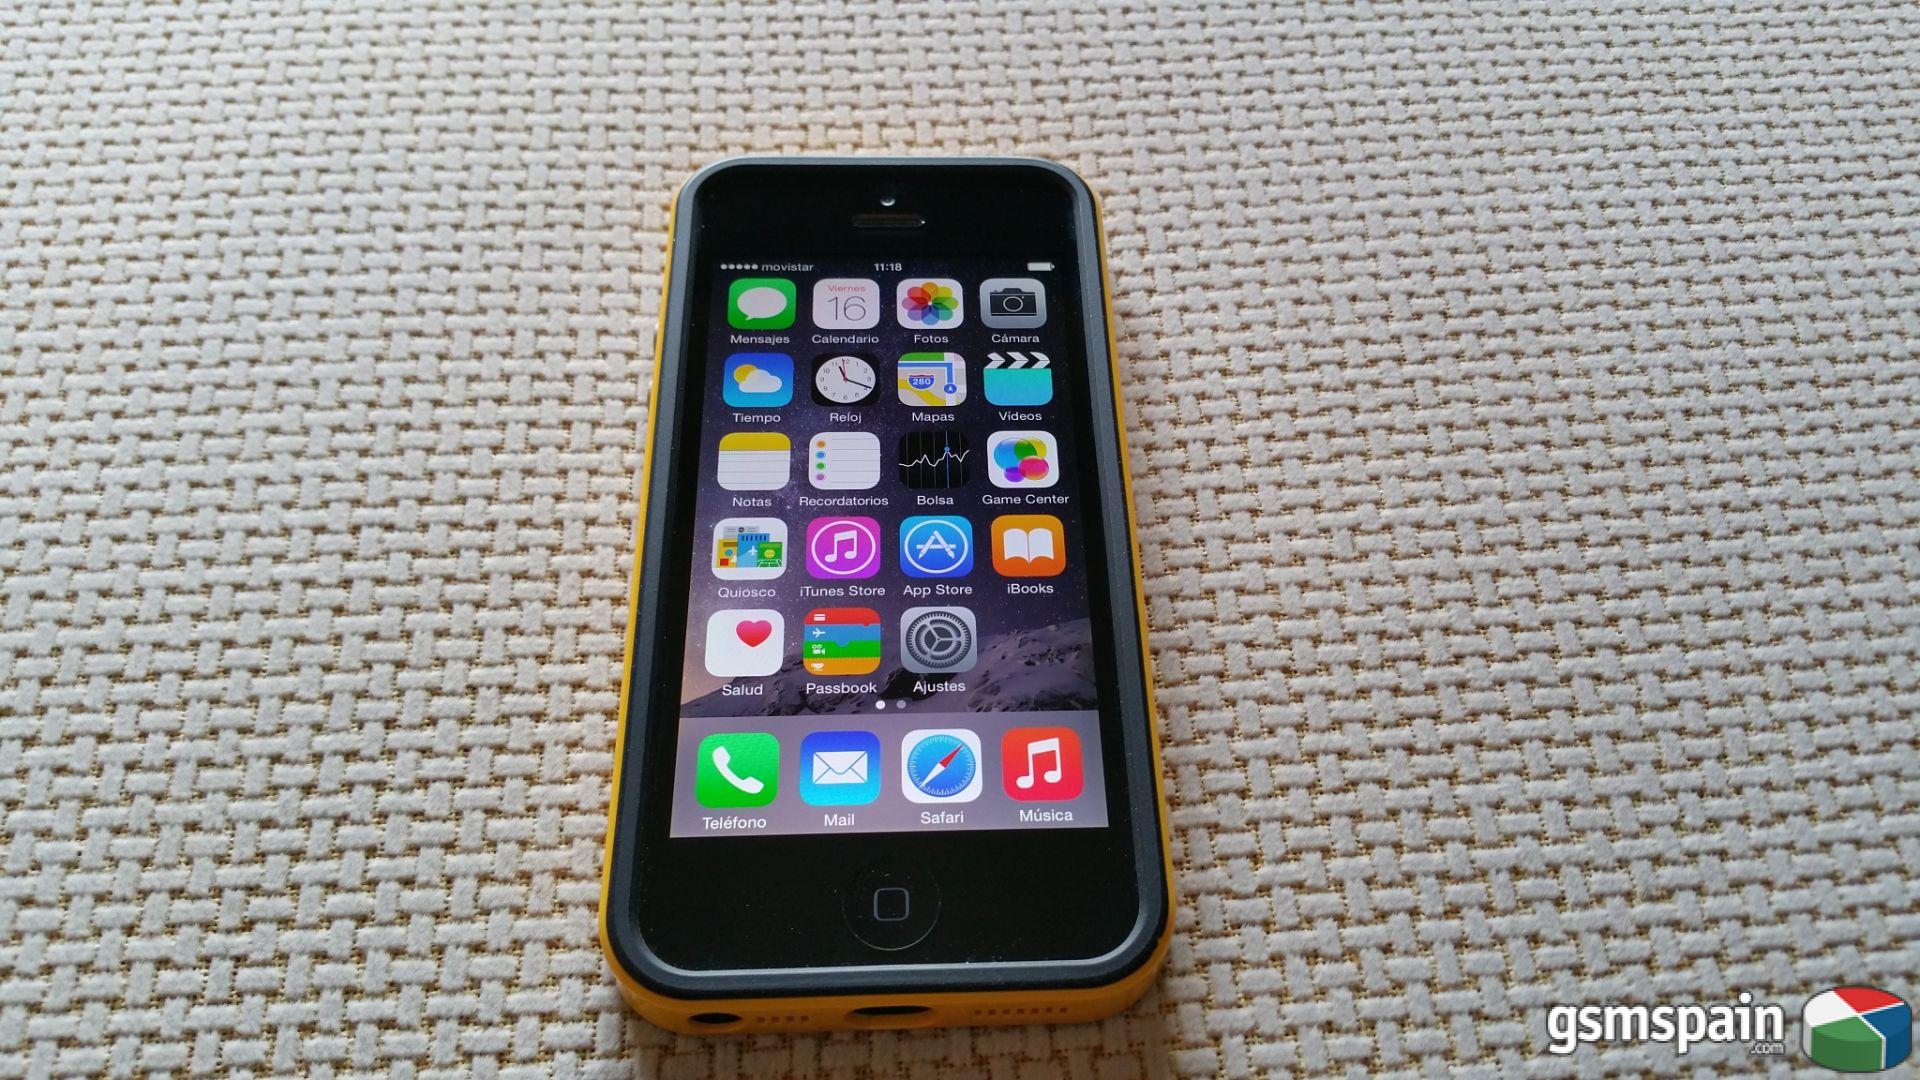 [VENDO] Apple iPhone 5 16GB LIBRE a Buen Precio. Incluye Funda Spigen Neo Hybrid EX